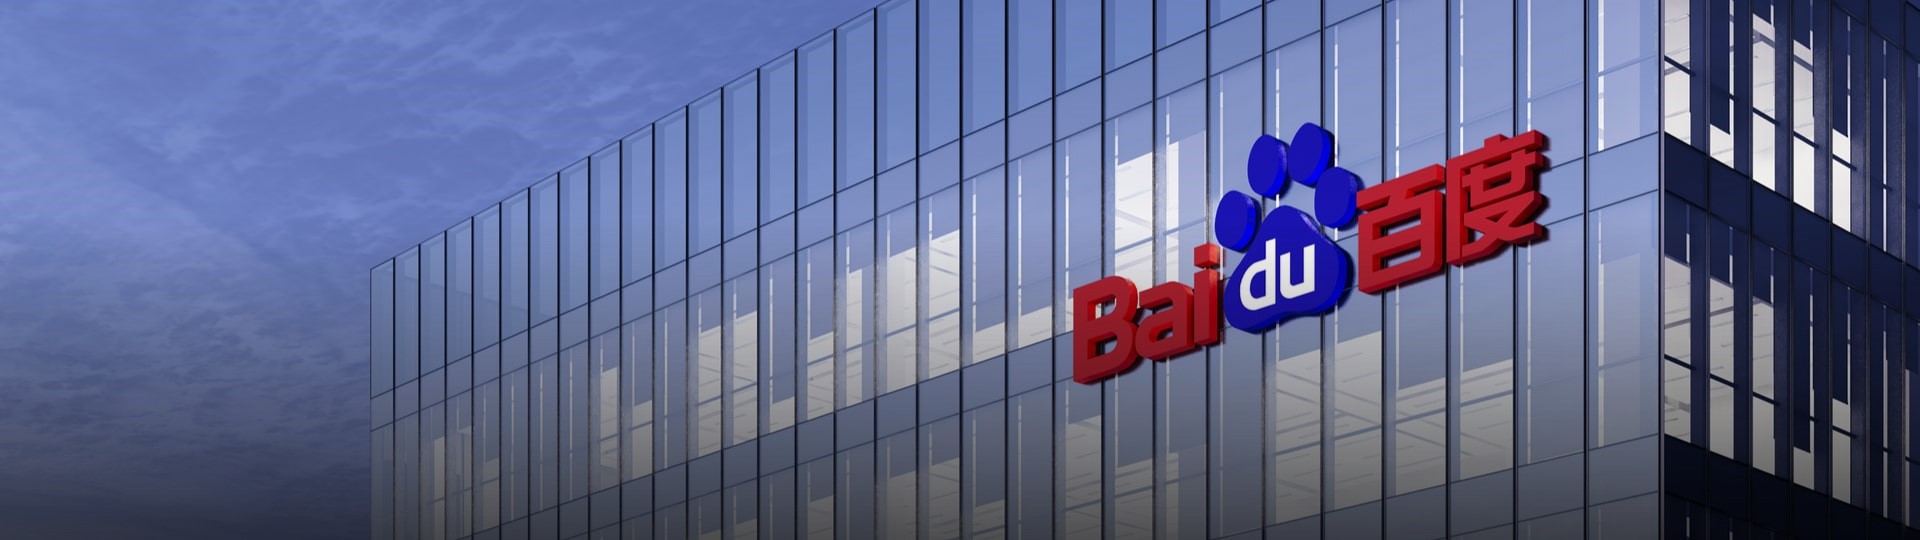 Čínská technologická firma Baidu vykázala zisk 2,8 miliardy jüanu